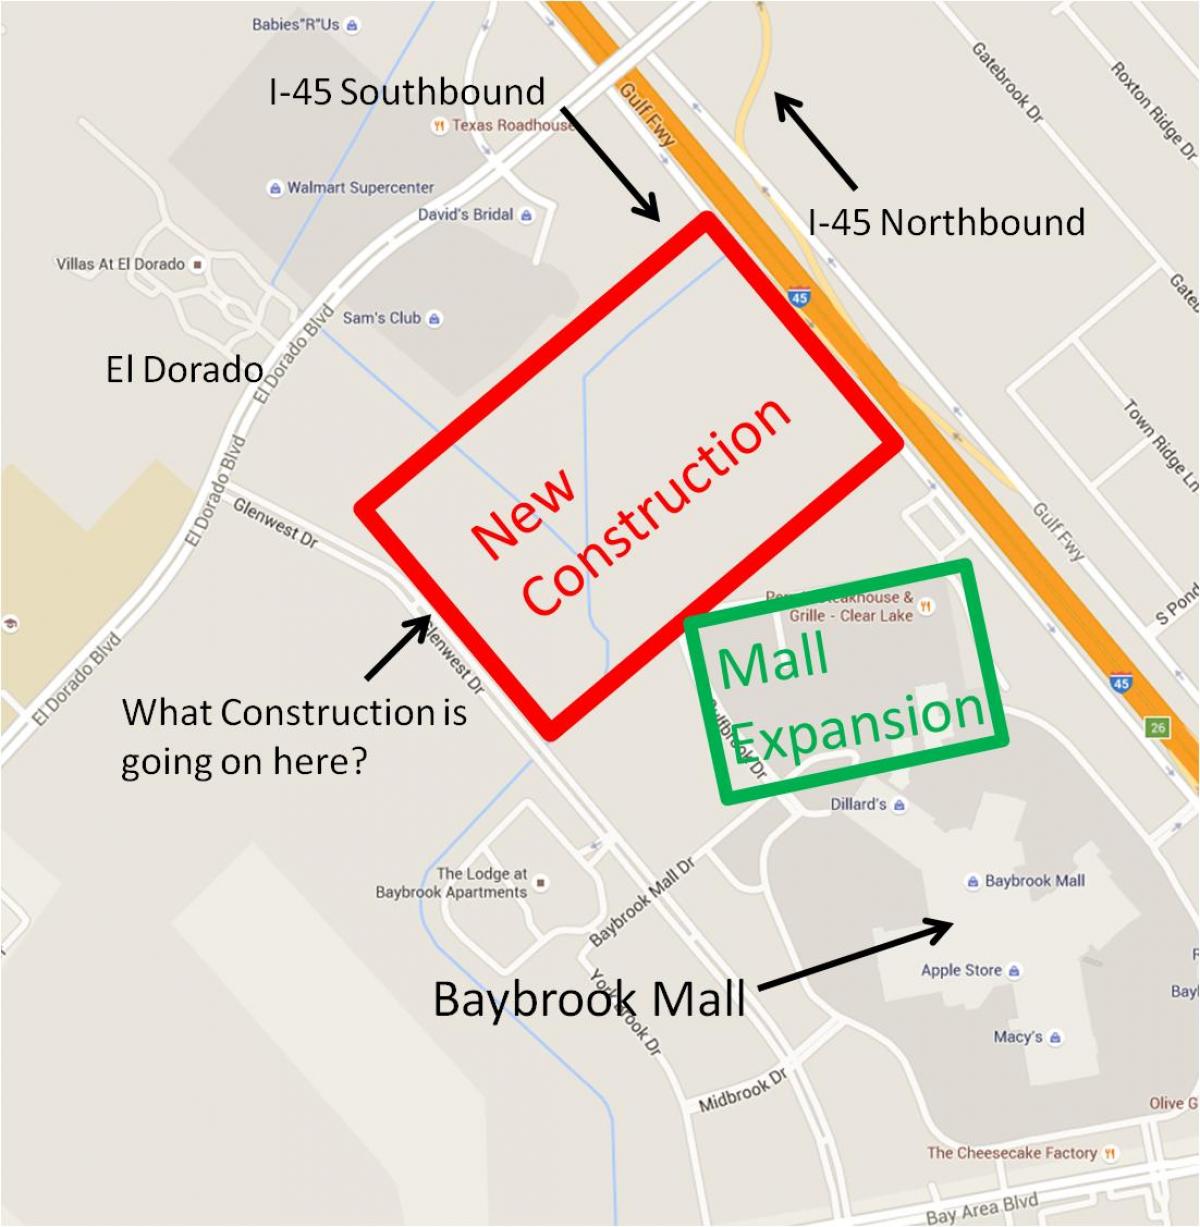 χάρτης της Baybrook mall